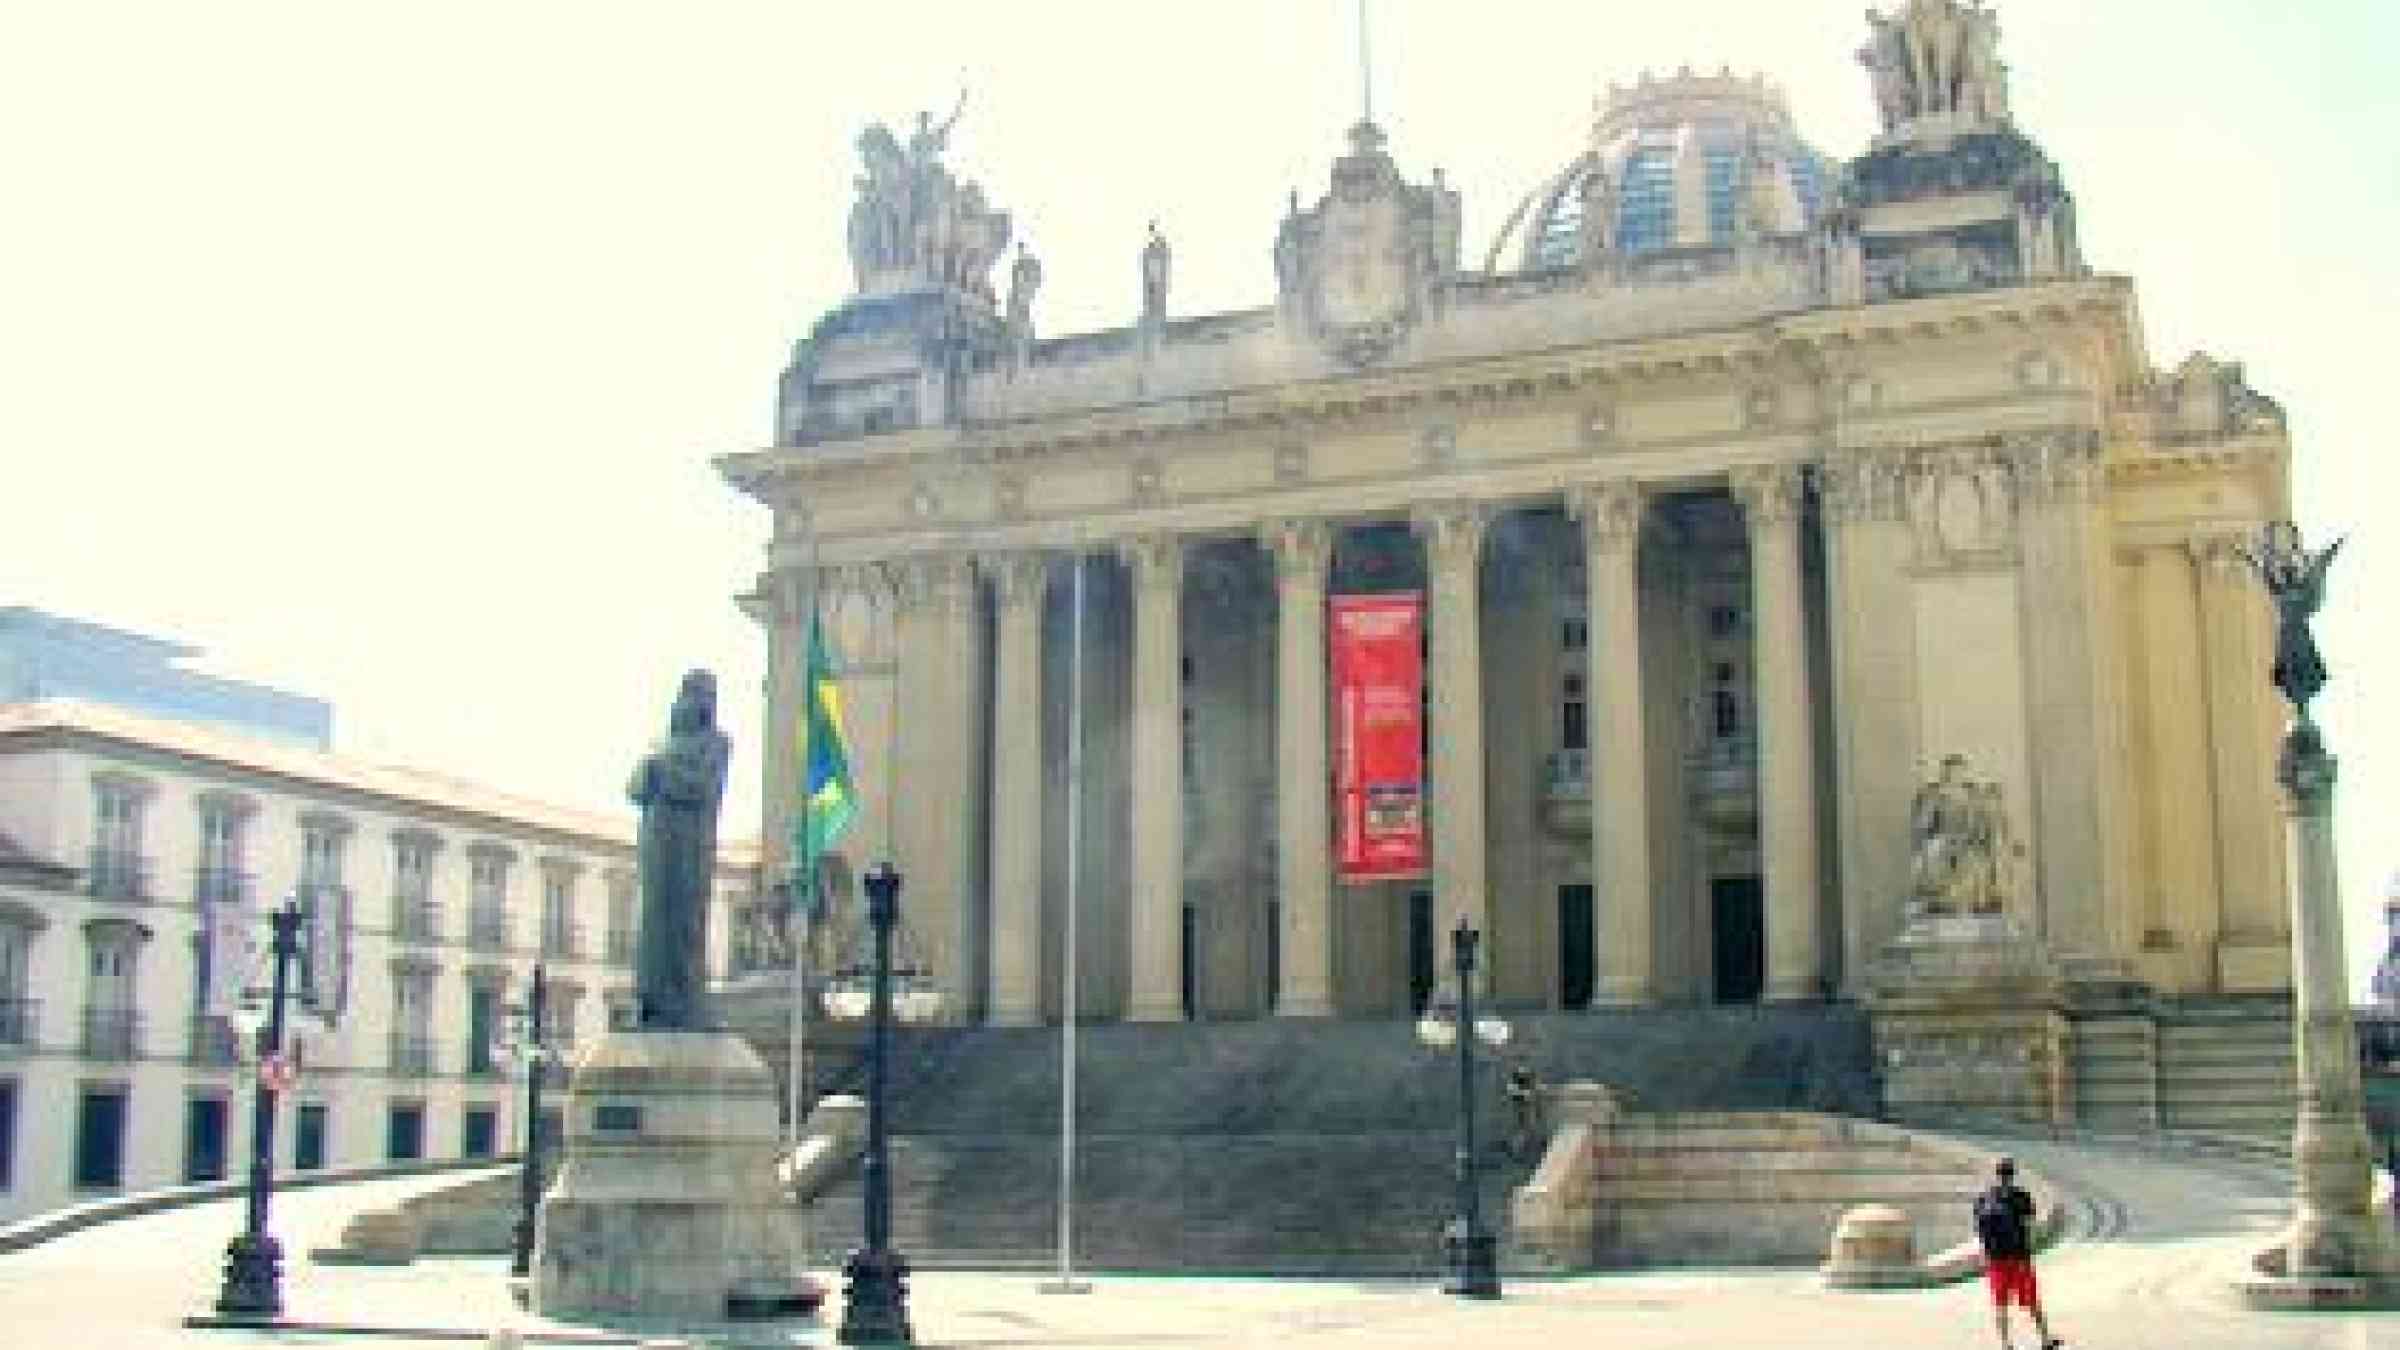 Palácio Tiradentes, the Legislative Assembly of Rio de Janeiro, Brazil